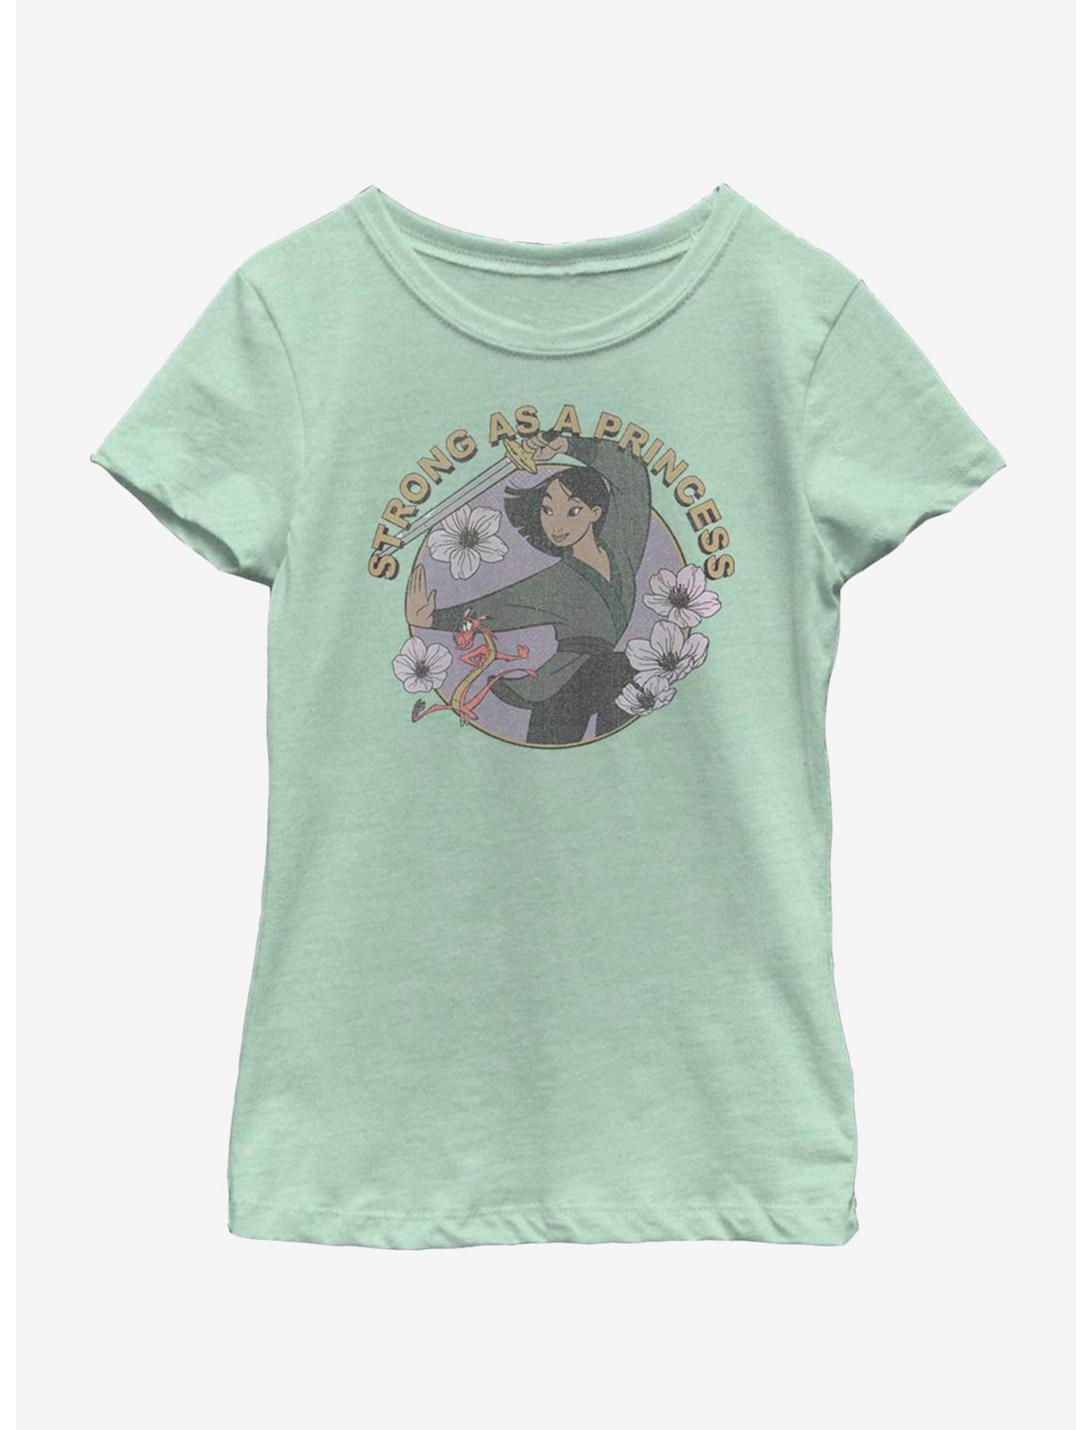 Disney Mulan Strong As A Princess Youth Girls T-Shirt, MINT, hi-res